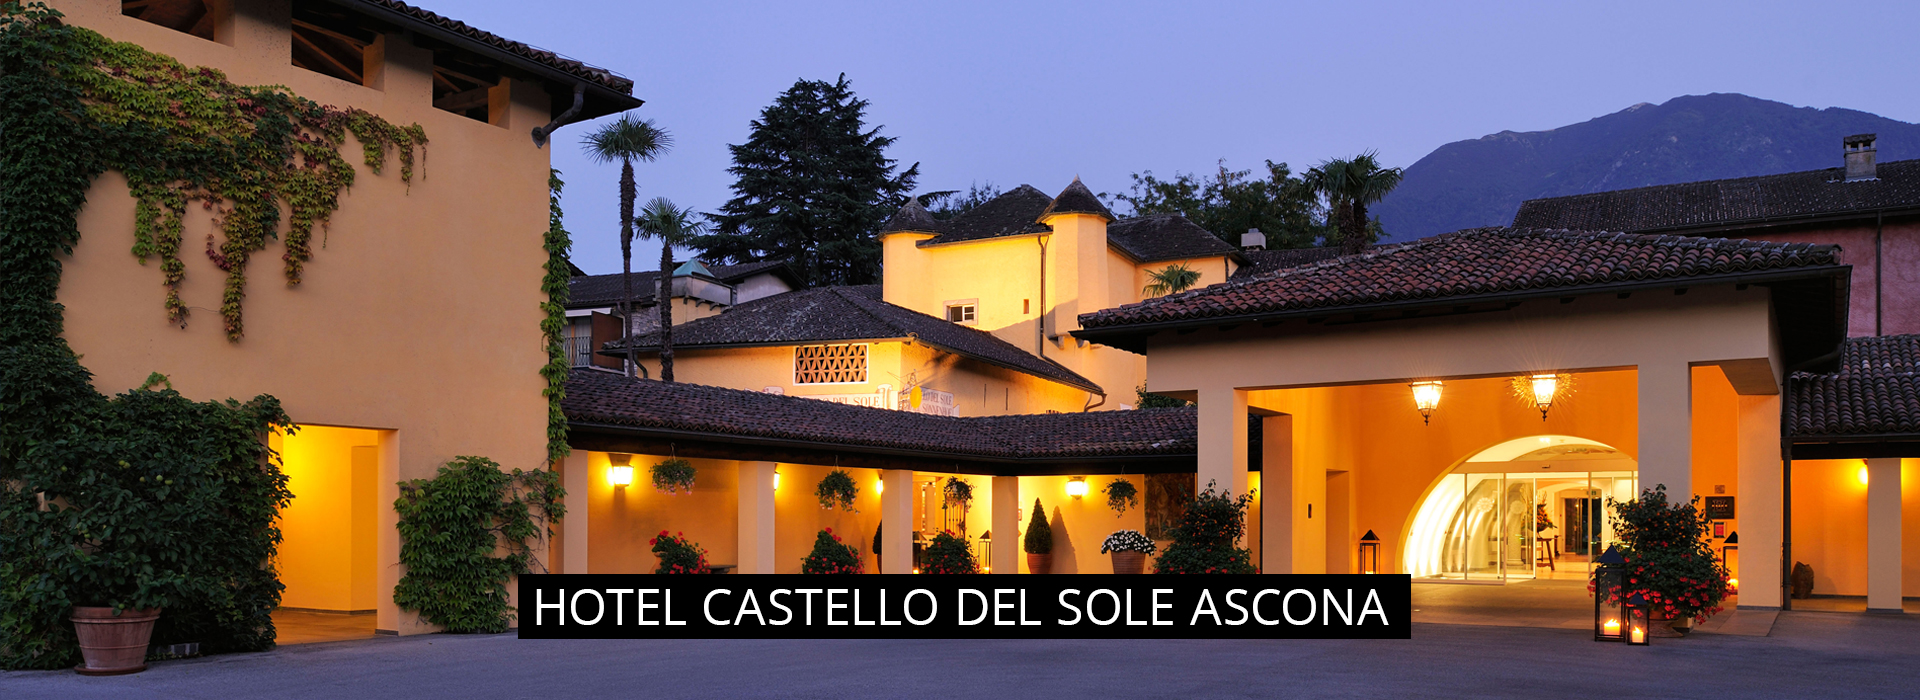 castello_del_sole